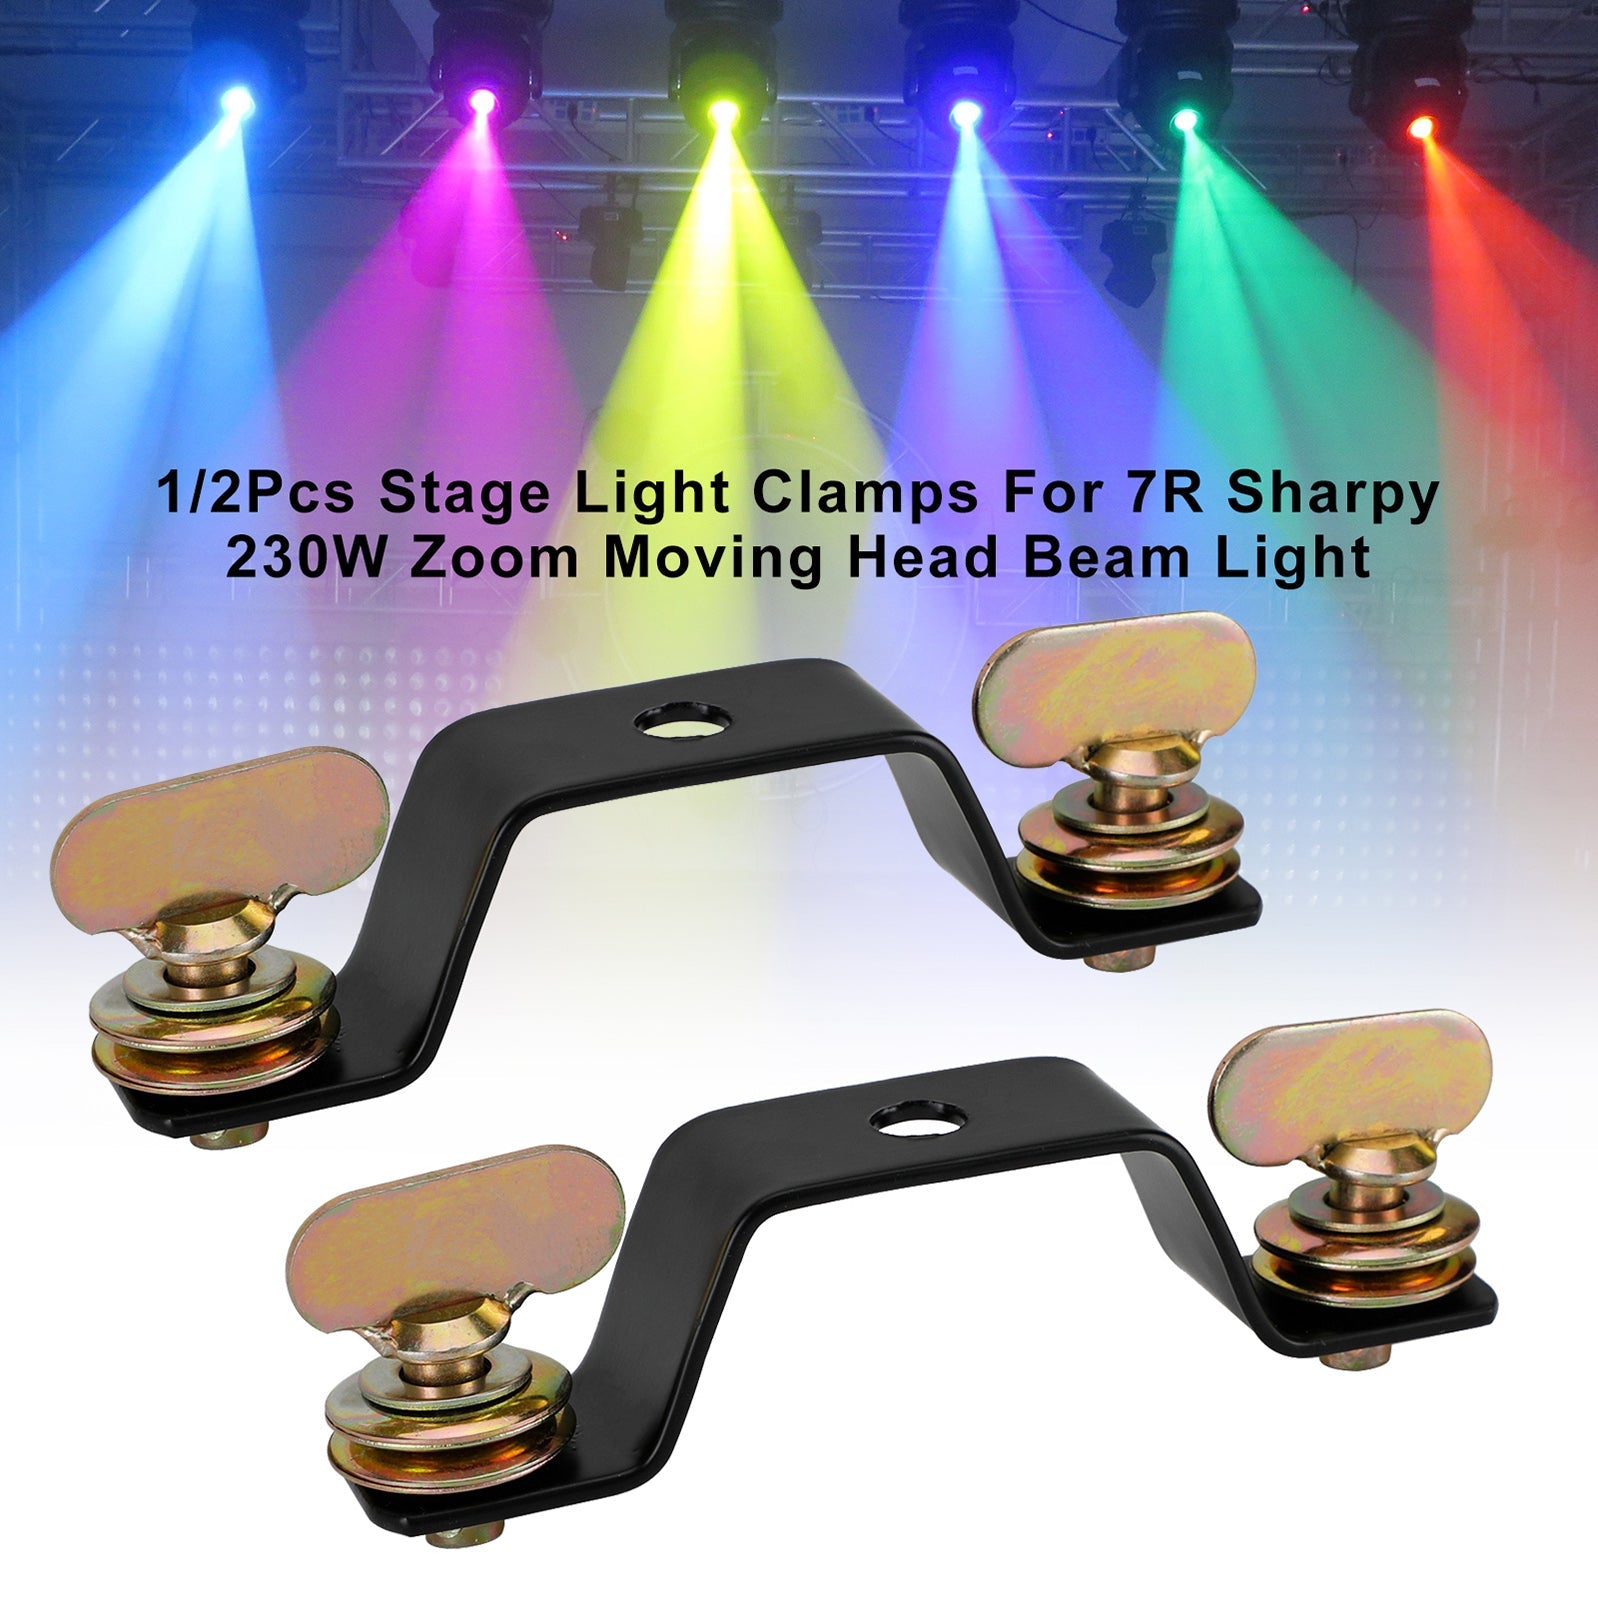 1/2 abrazaderas de luz de escenario para 7R Sharpy 230W Zoom haz de luz con cabezal móvil